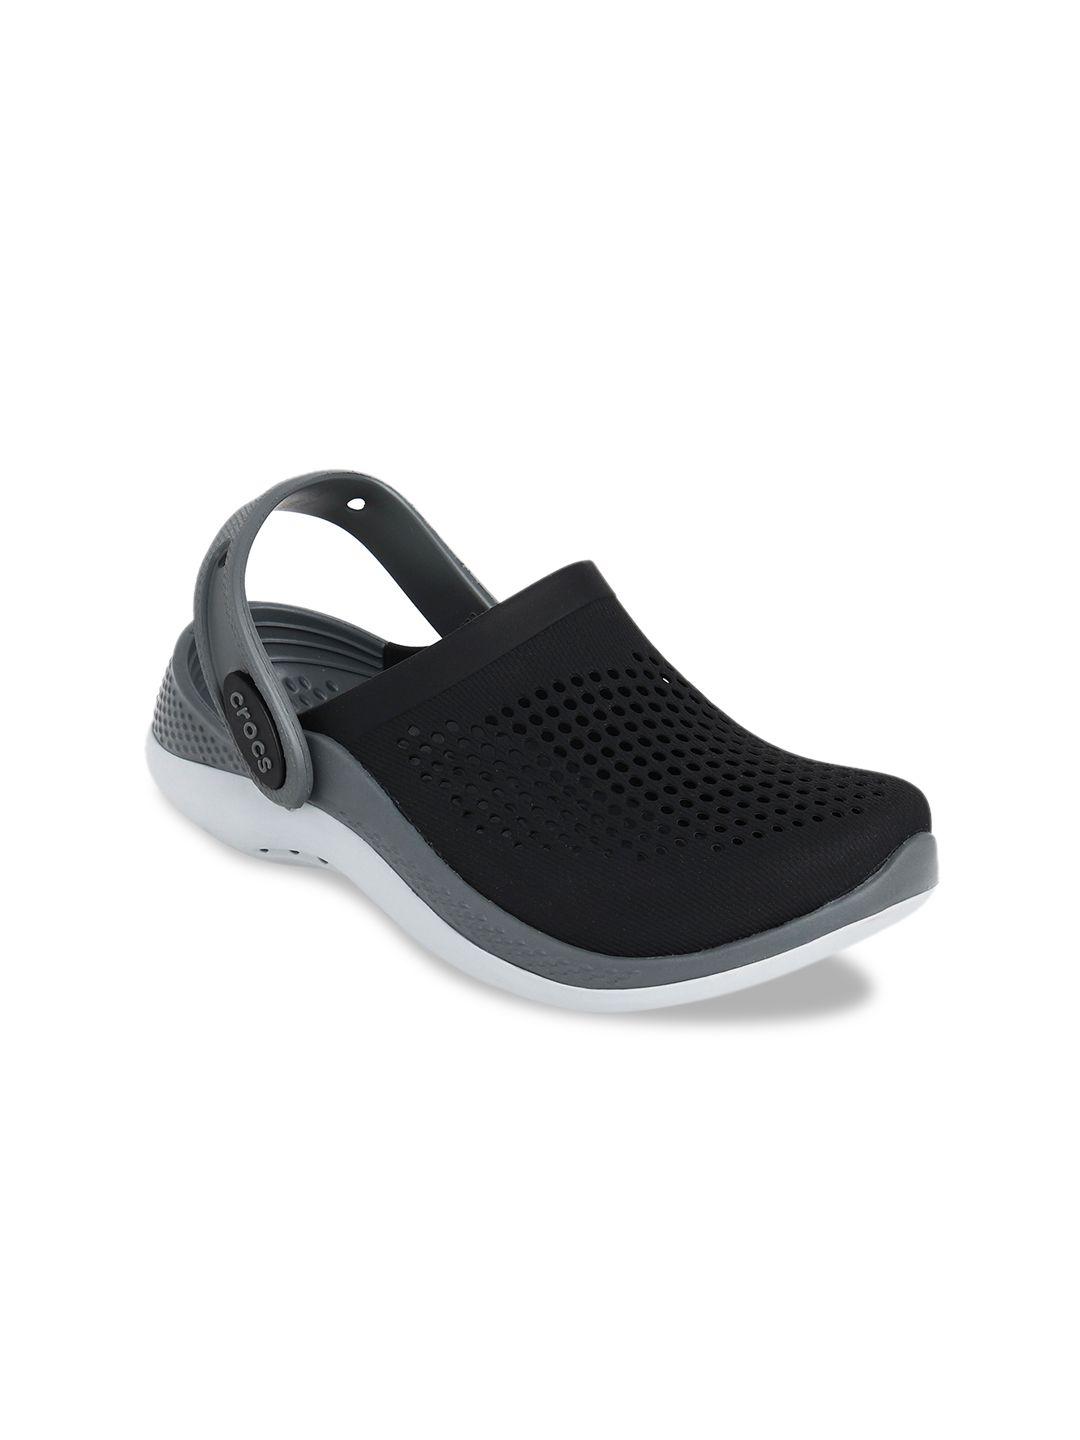 crocs unisex kids black & grey clogs sandals